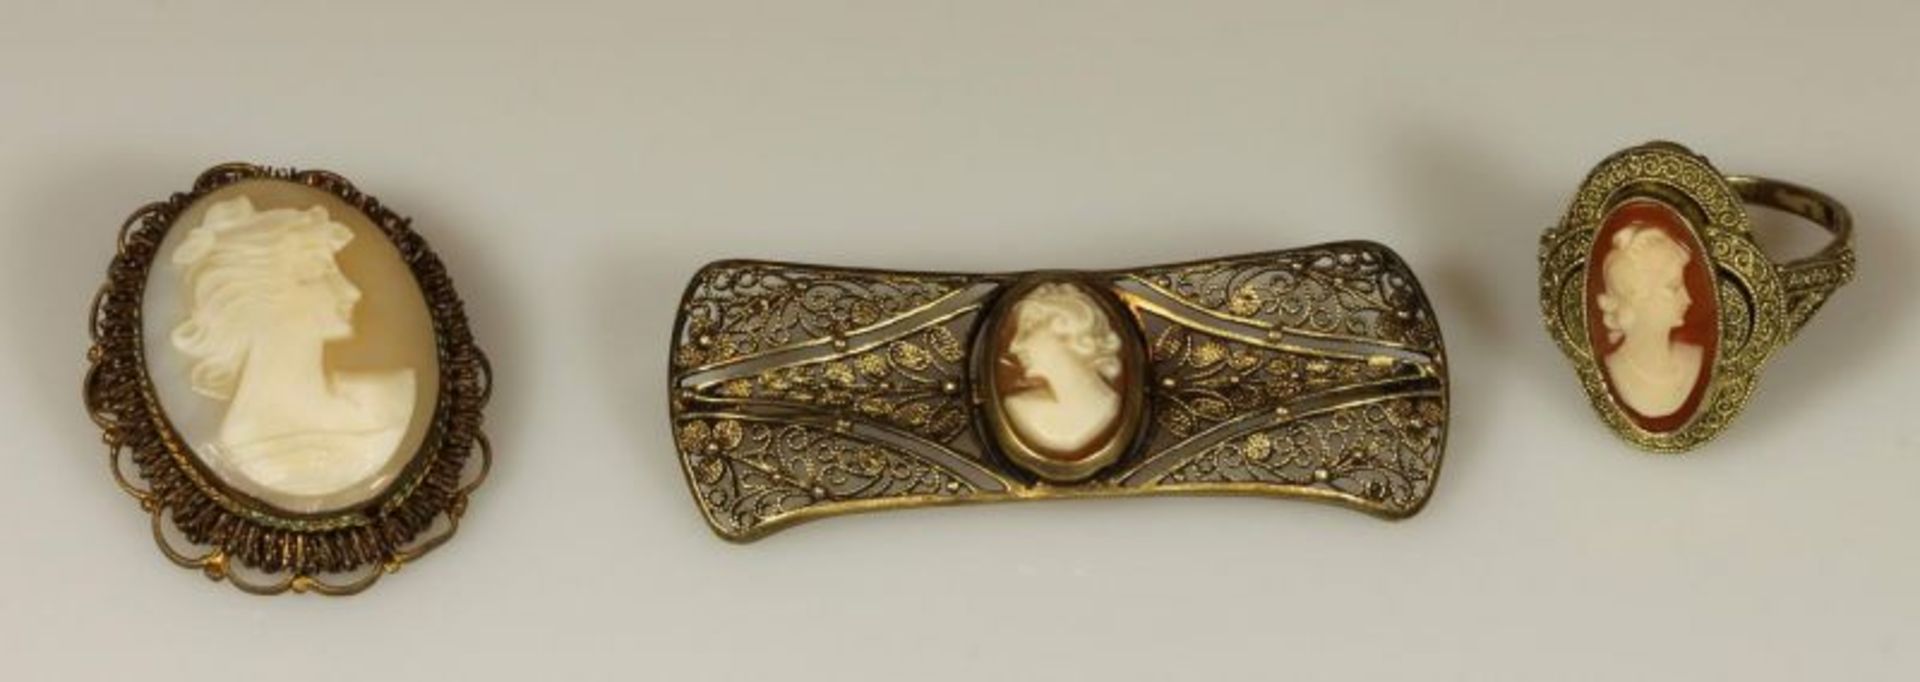 Kameeschmuck, um 1900: Brosche, Silber 835, vergoldet; Ring, gepunzt Fahrner, Silber 925, vergoldet;